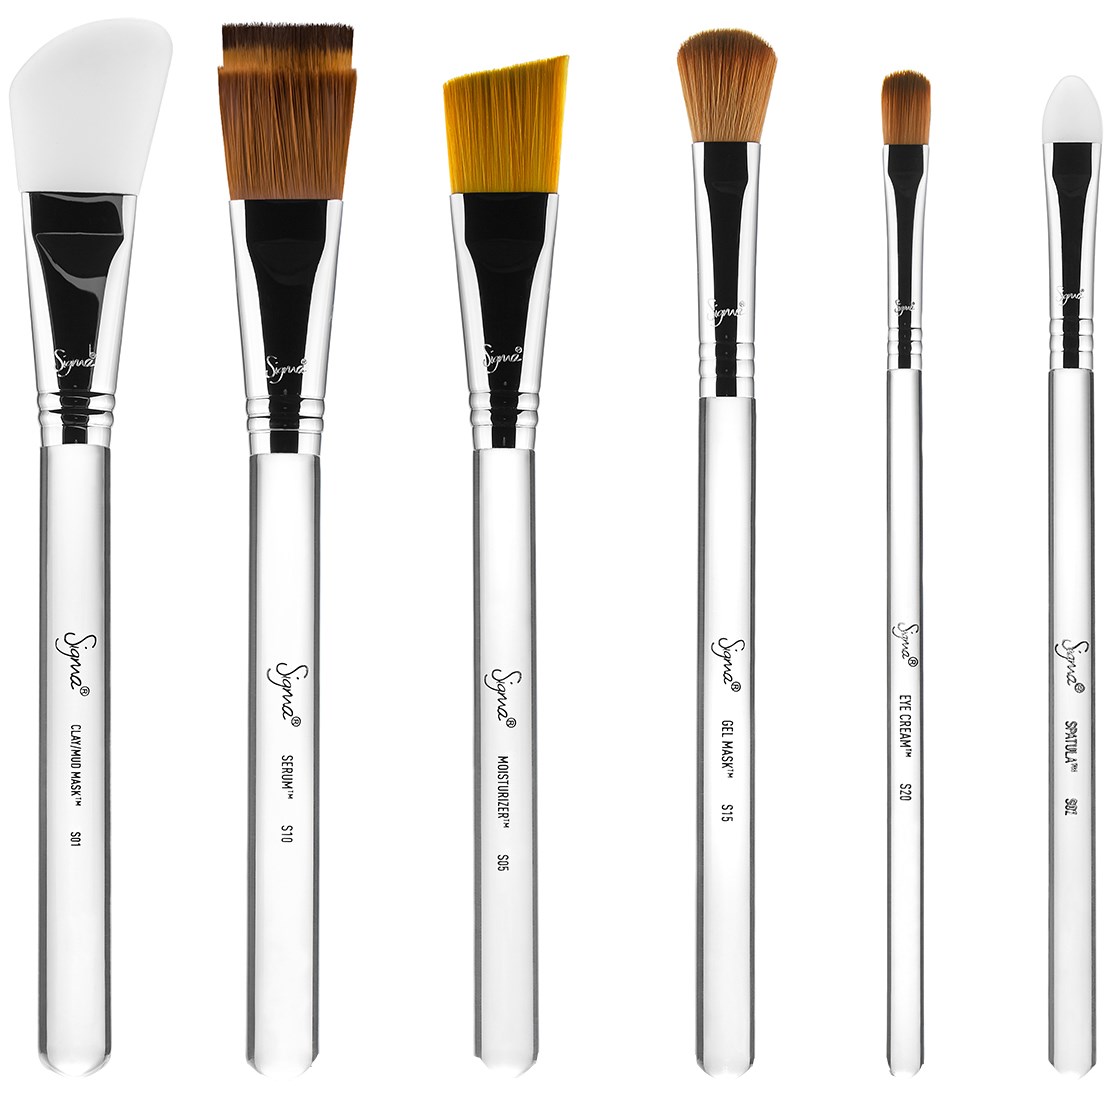 Bilde av Sigma Beauty Skincare Brush Set